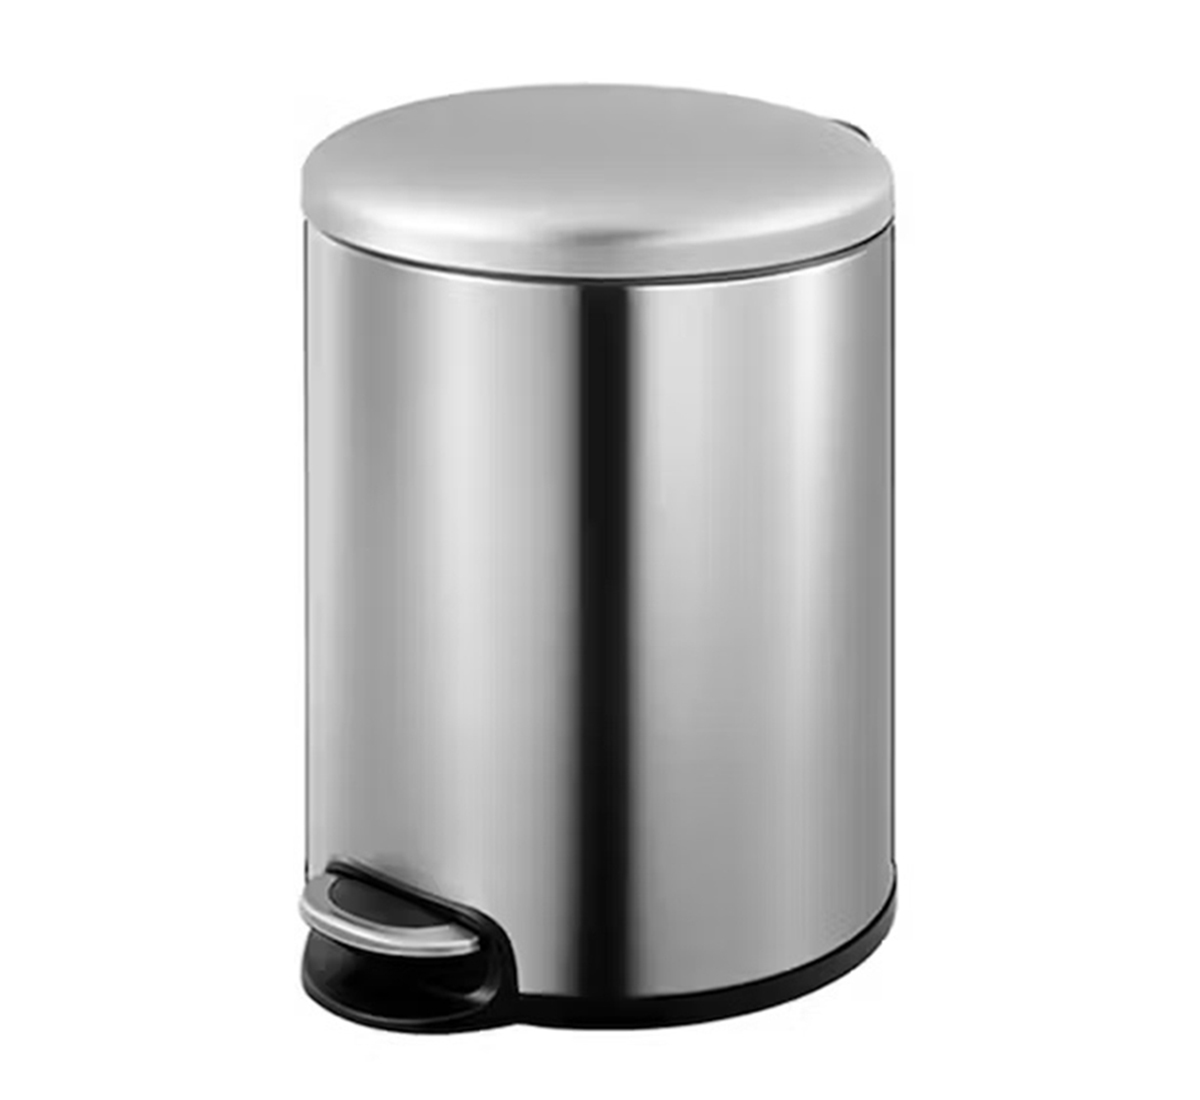 5 Liter Stainless Steel Round Pedal bin